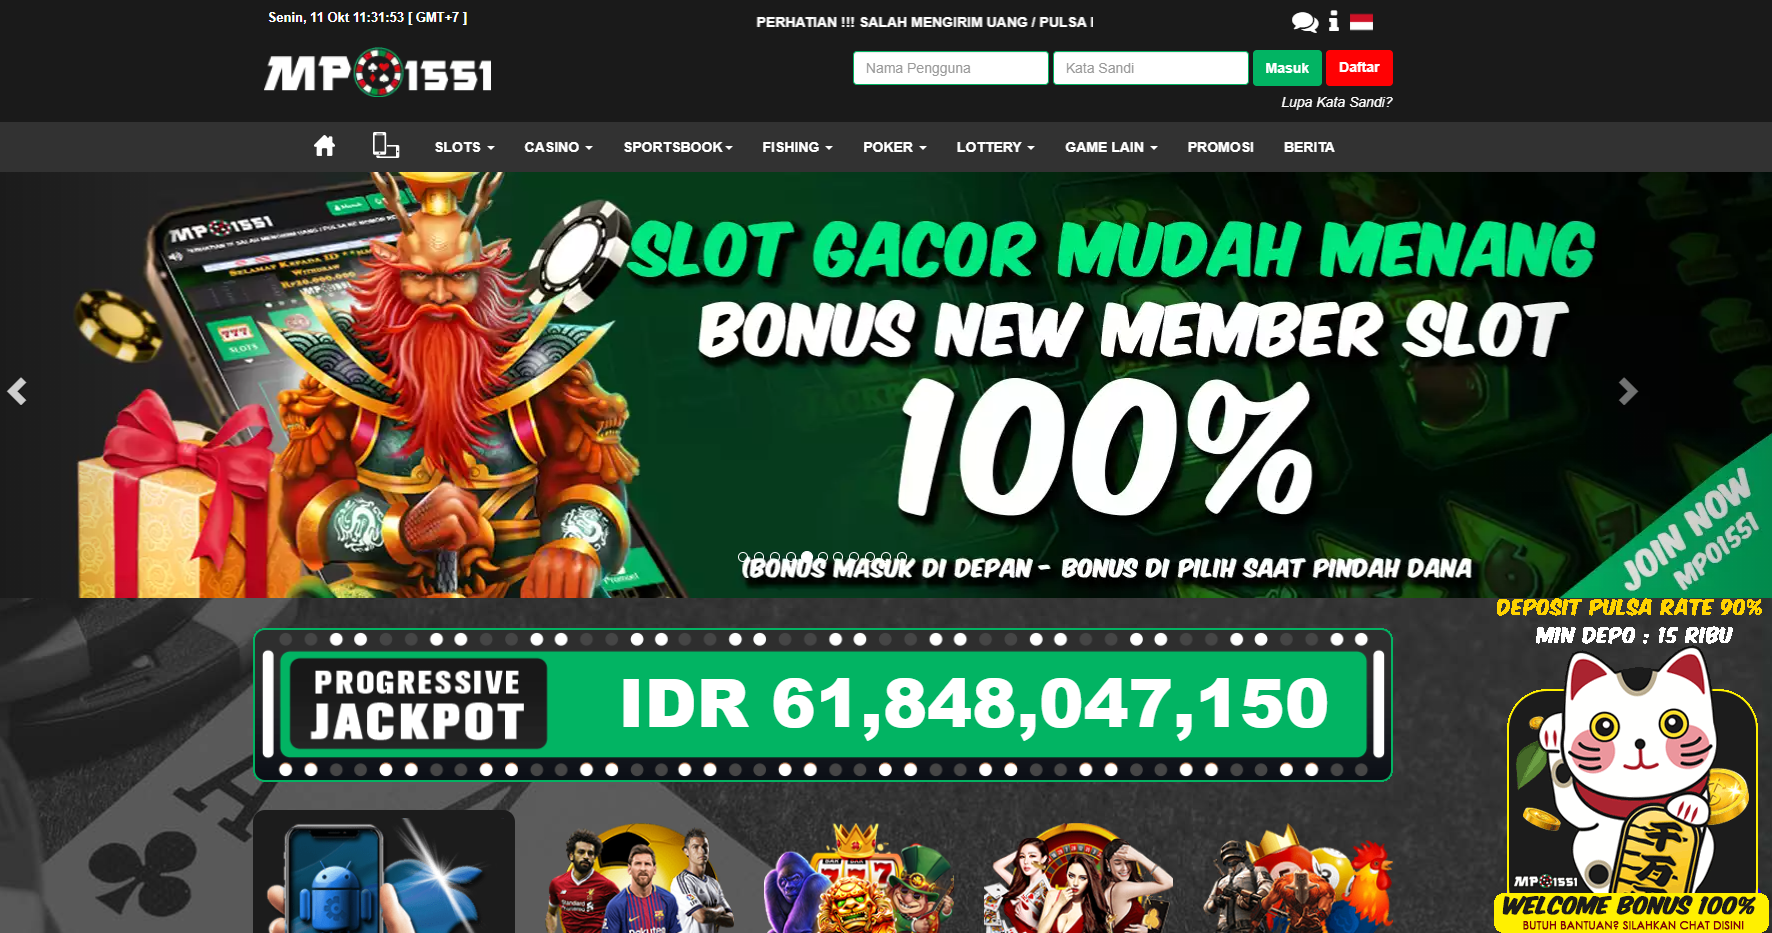 MPO1551 Situs Judi Slot Online Deposit Dana Terbaik